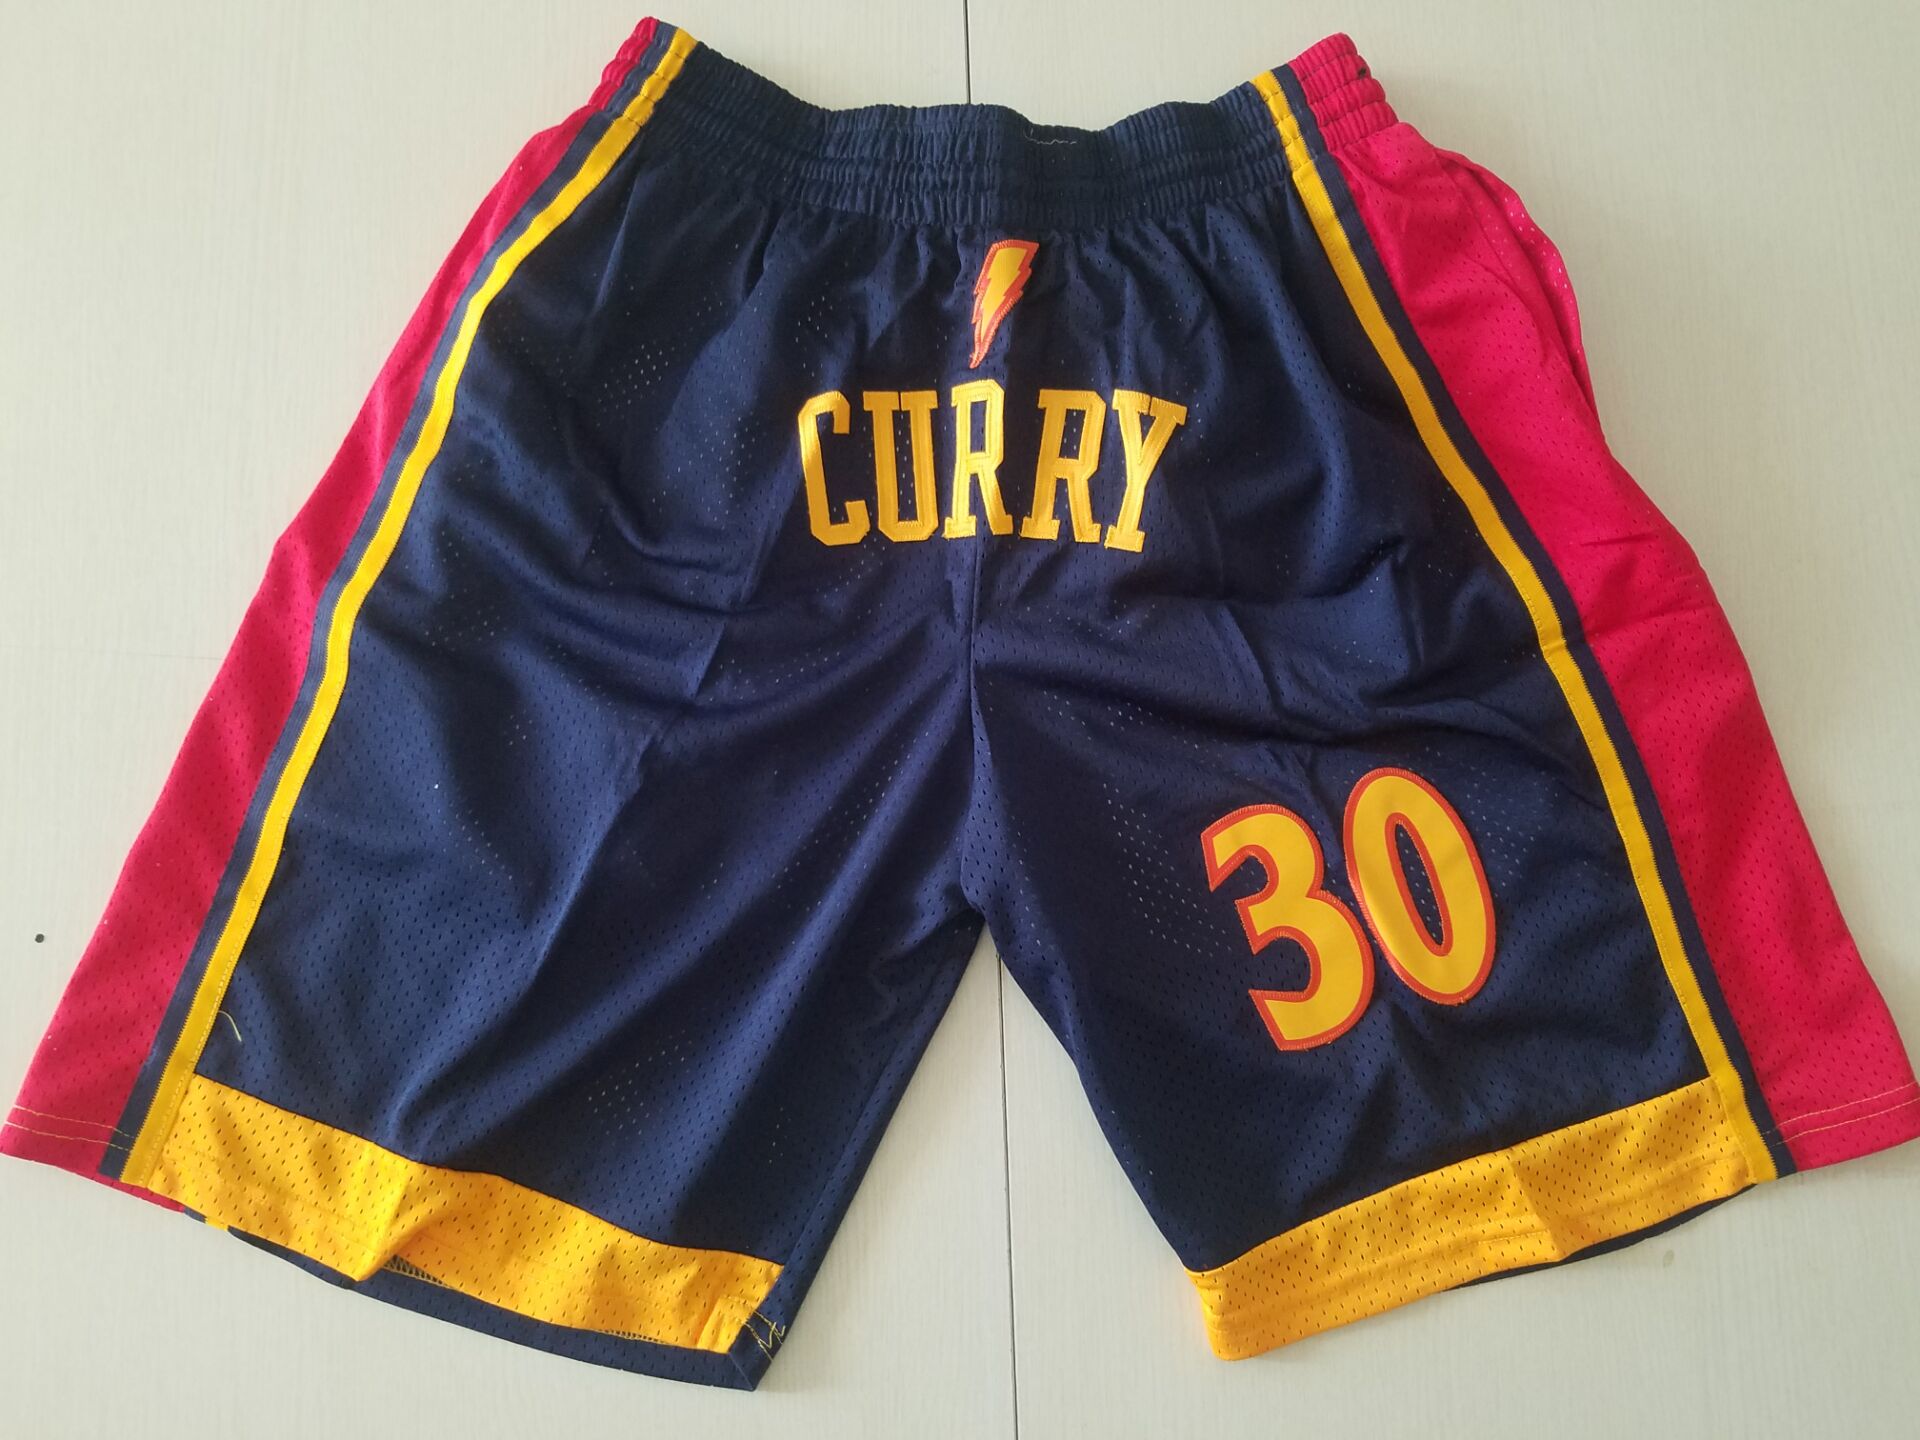 2020 Men NBA Golden State Warriors blue #30 Curry shorts